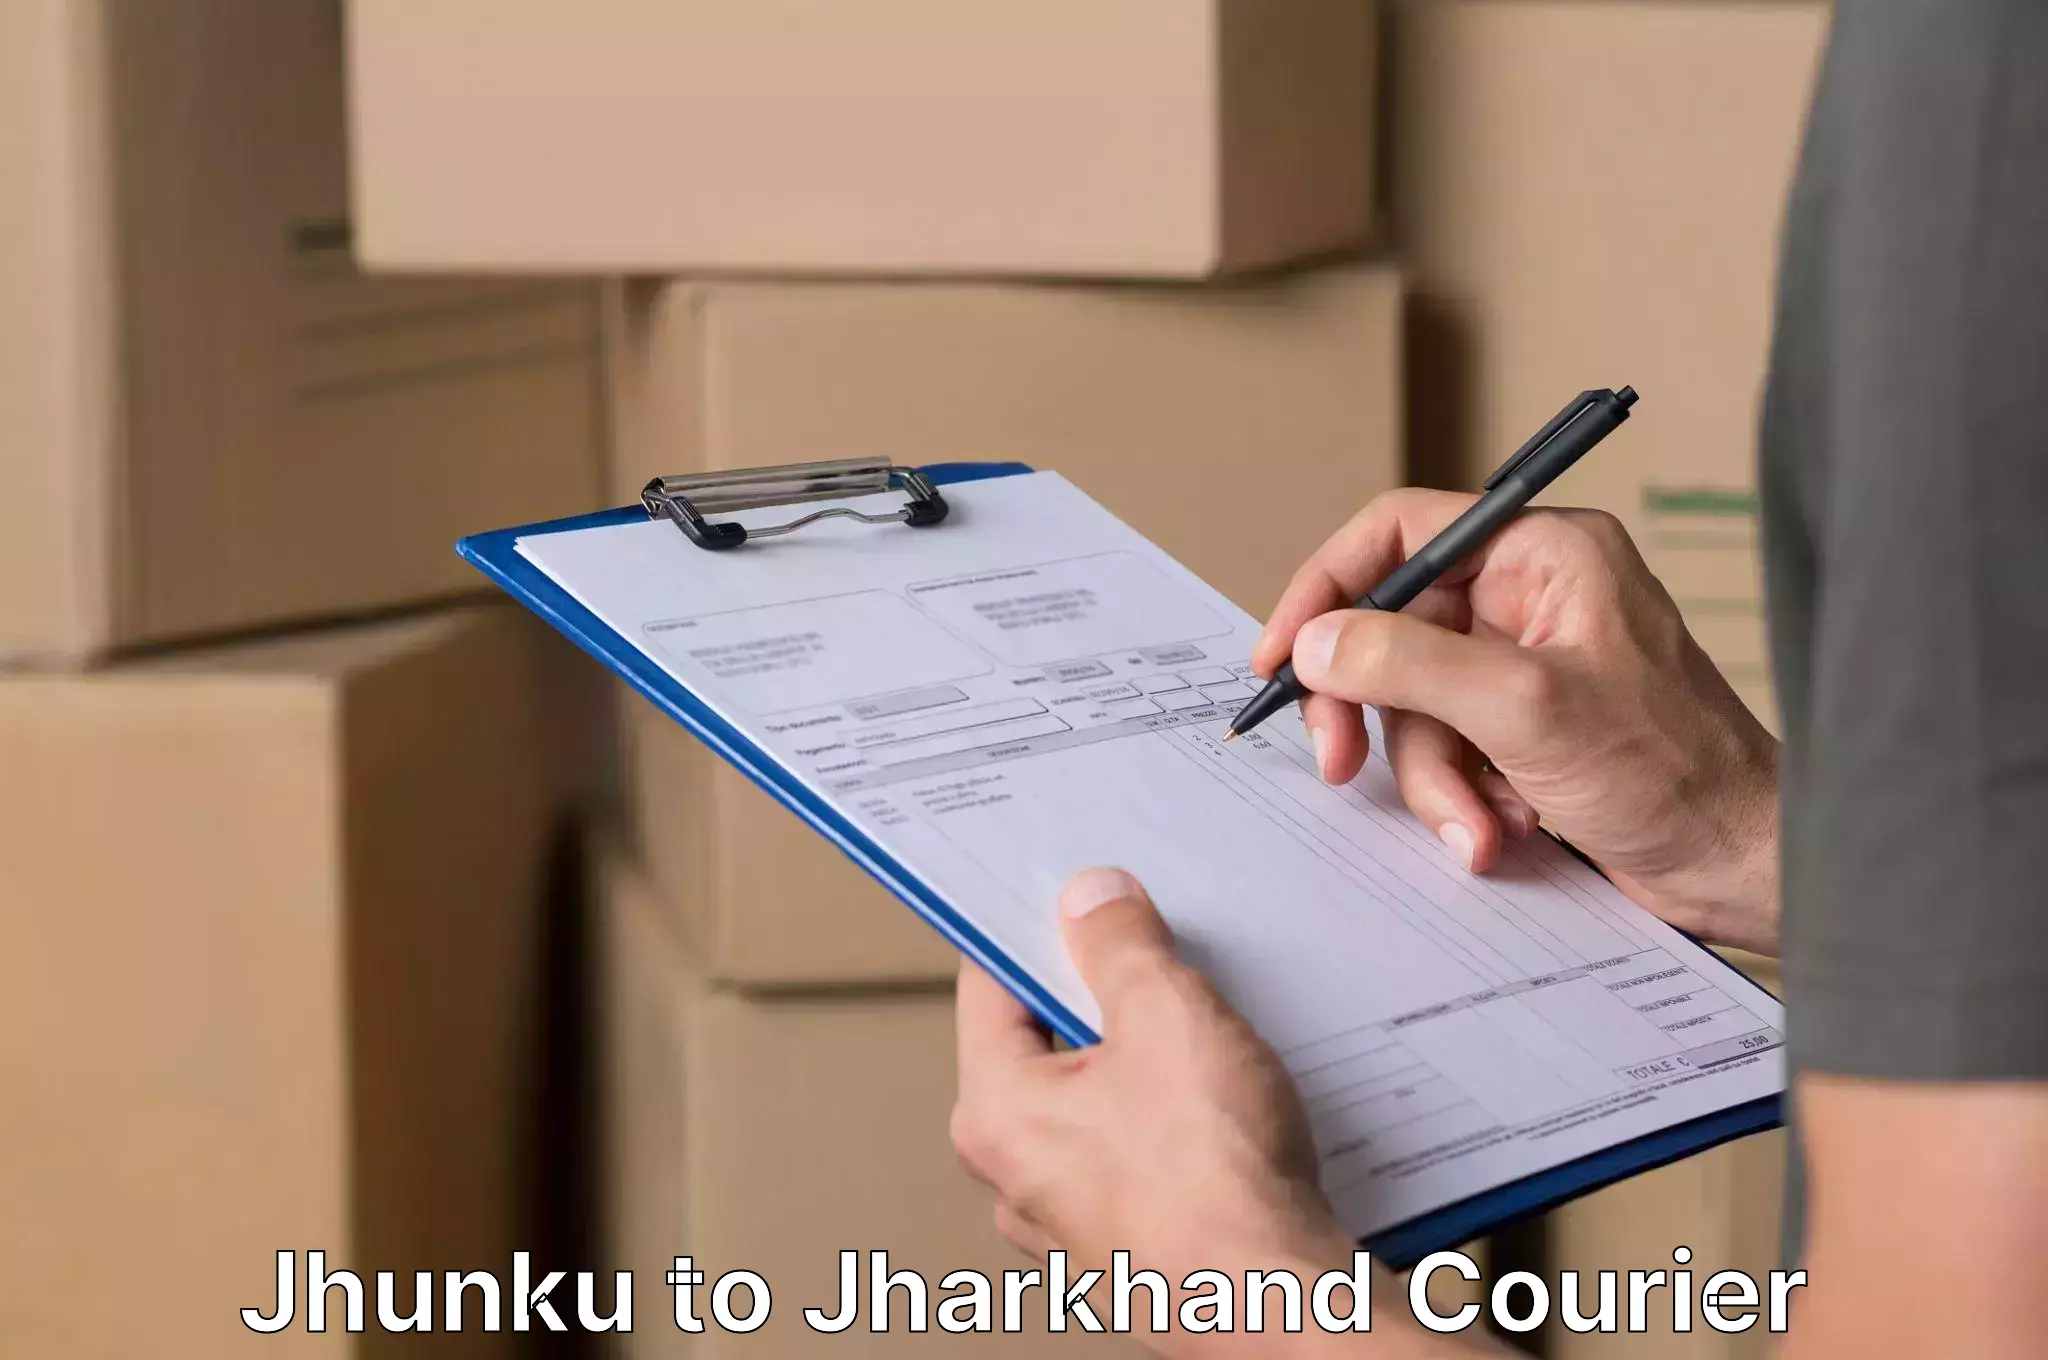 Household movers Jhunku to Jharkhand